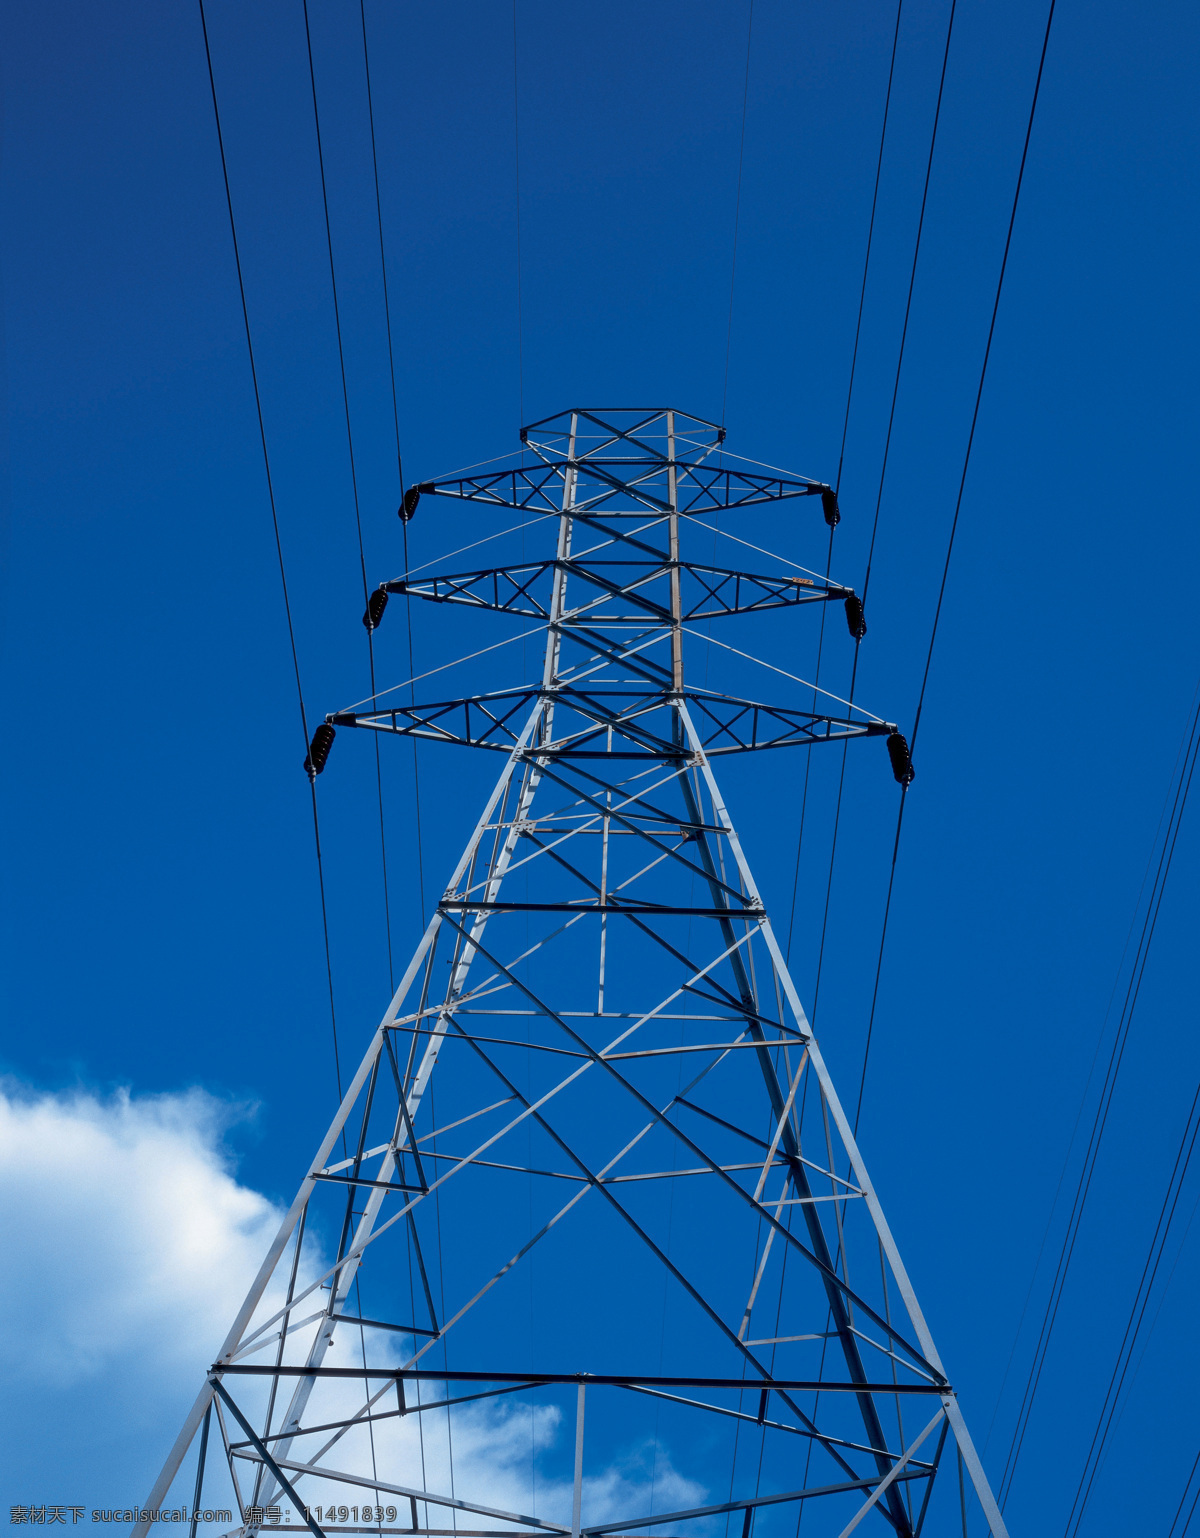 电塔 电线杆 天空 电压线 工业电子 电 能源 电子工业 户外 电线 工业生产 现代科技